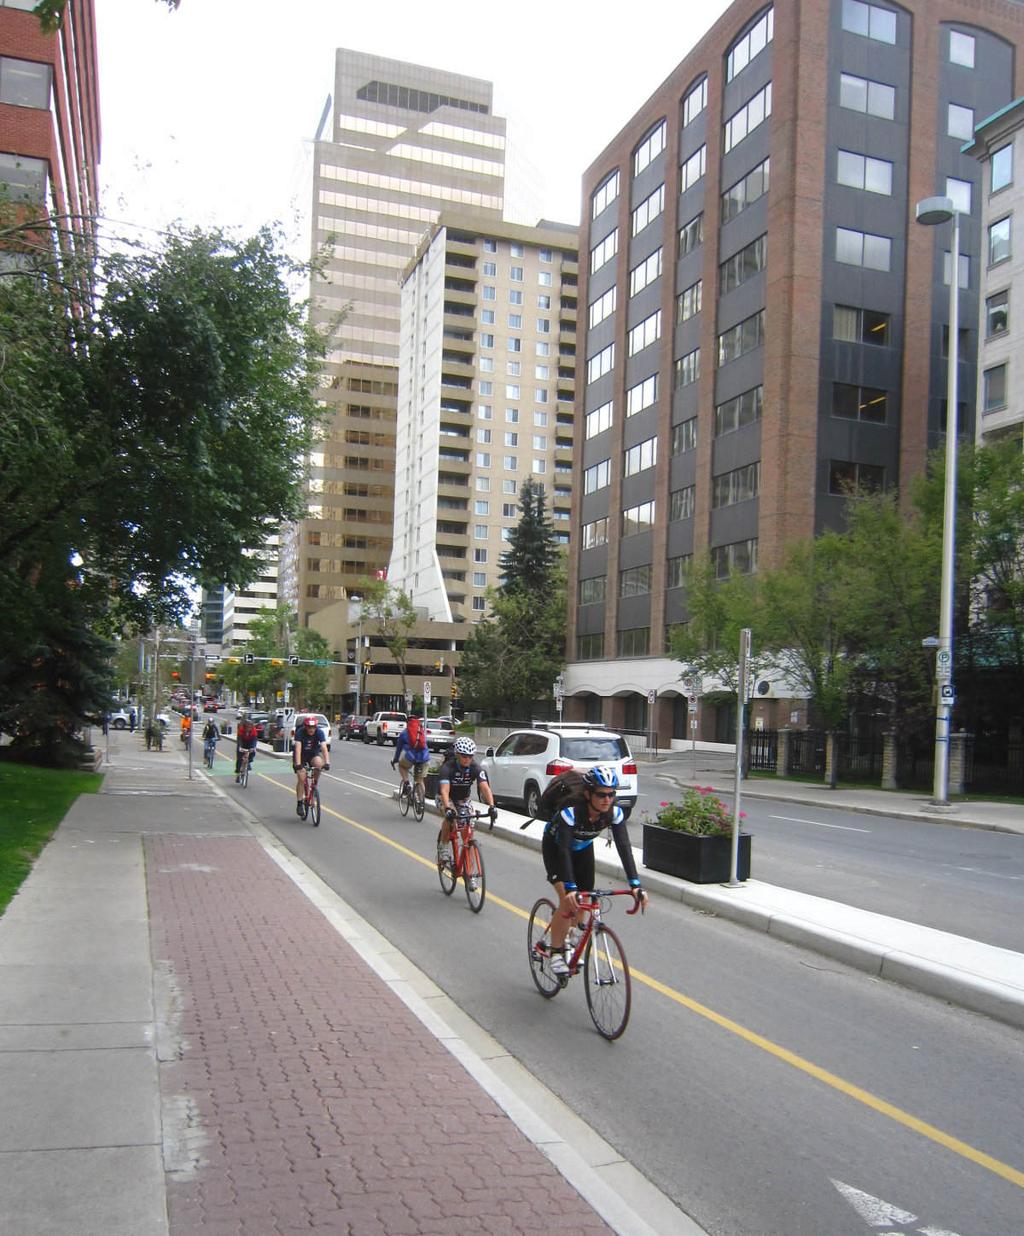 Gute Beispiele international Stichwort protected bike lane Der Begriff protected bike lane (deutsch geschützte Radspur, bzw. Radfahrbahn ) stammt aus den USA / Kanada.